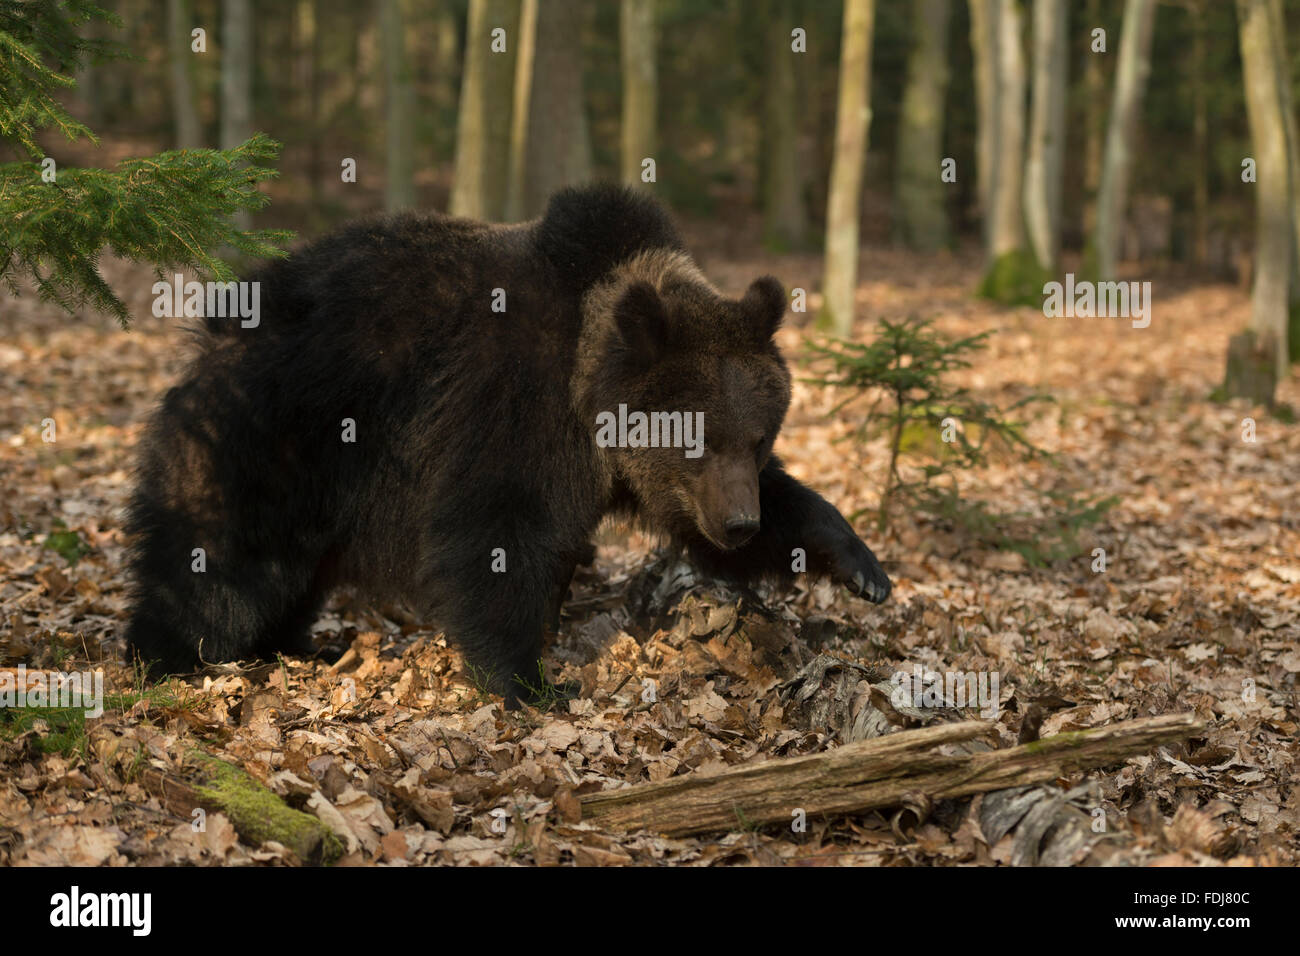 Unione orso bruno / Europaeischer Braunbaer ( Ursus arctos ) passeggiate intorno in boschi misti attraverso foglie avvizzite. Foto Stock